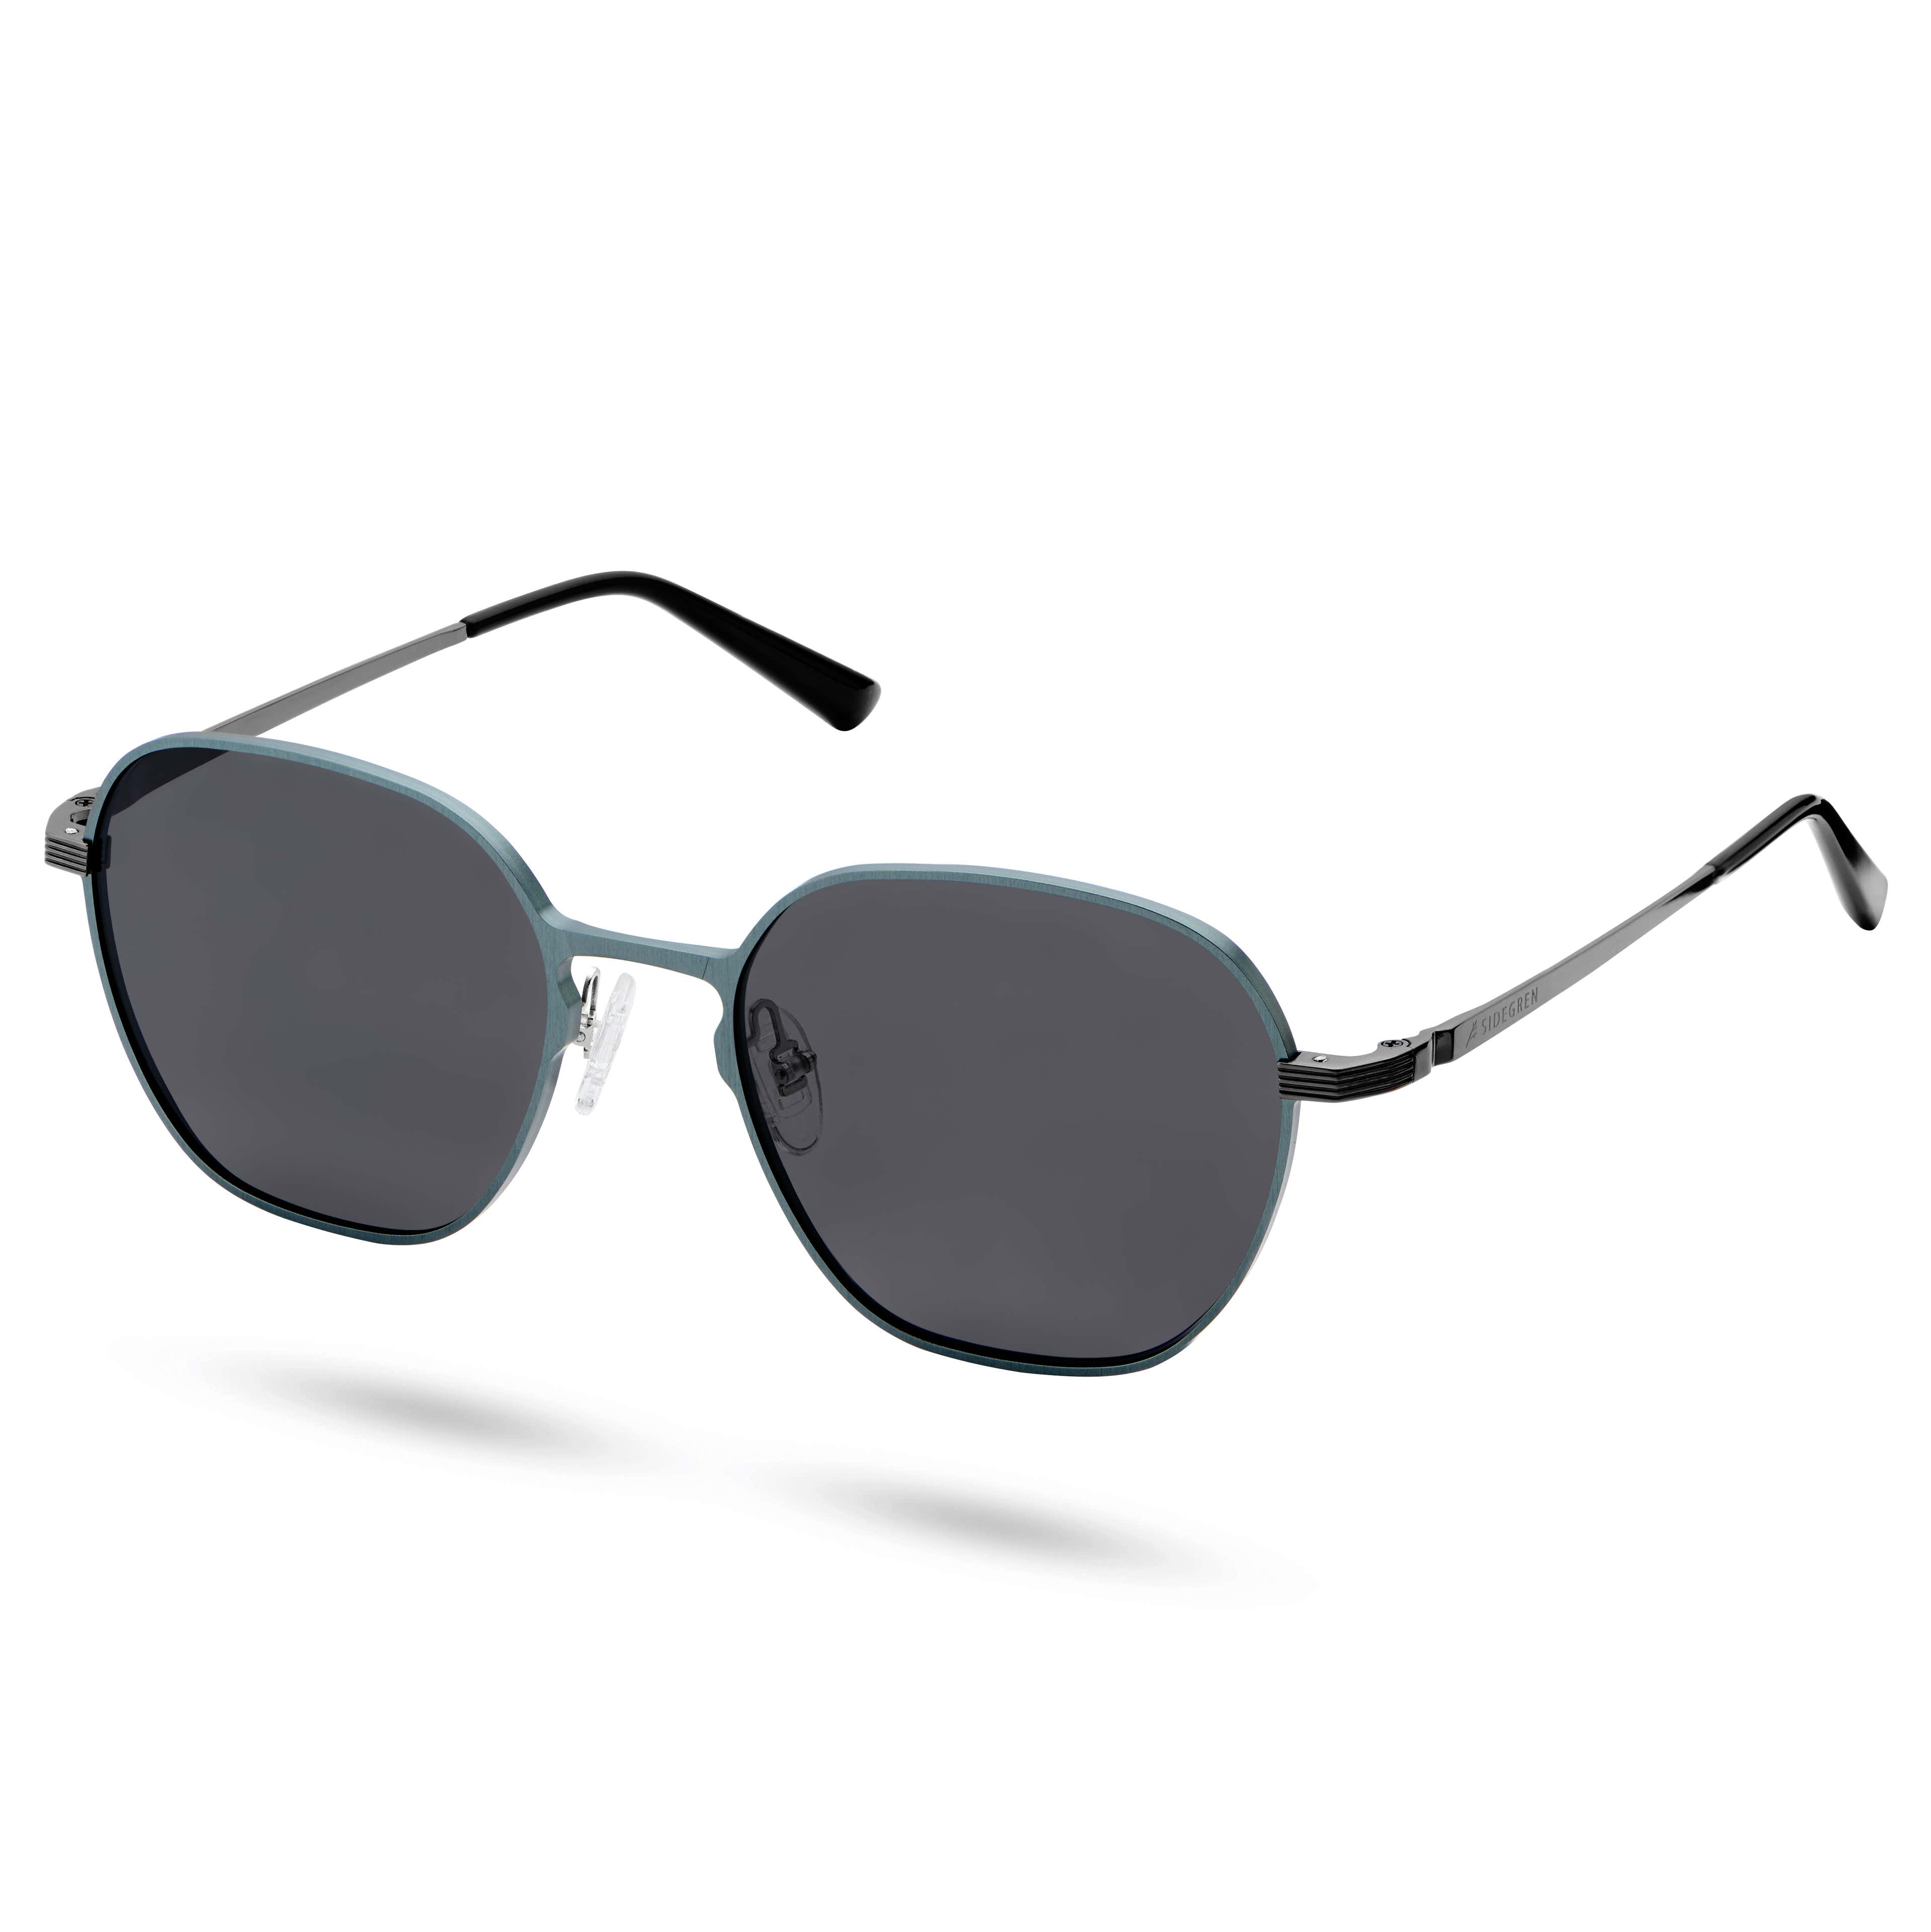 Spiżowo-szare polaryzacyjne sześciokątne okulary przeciwsłoneczne z tytanu